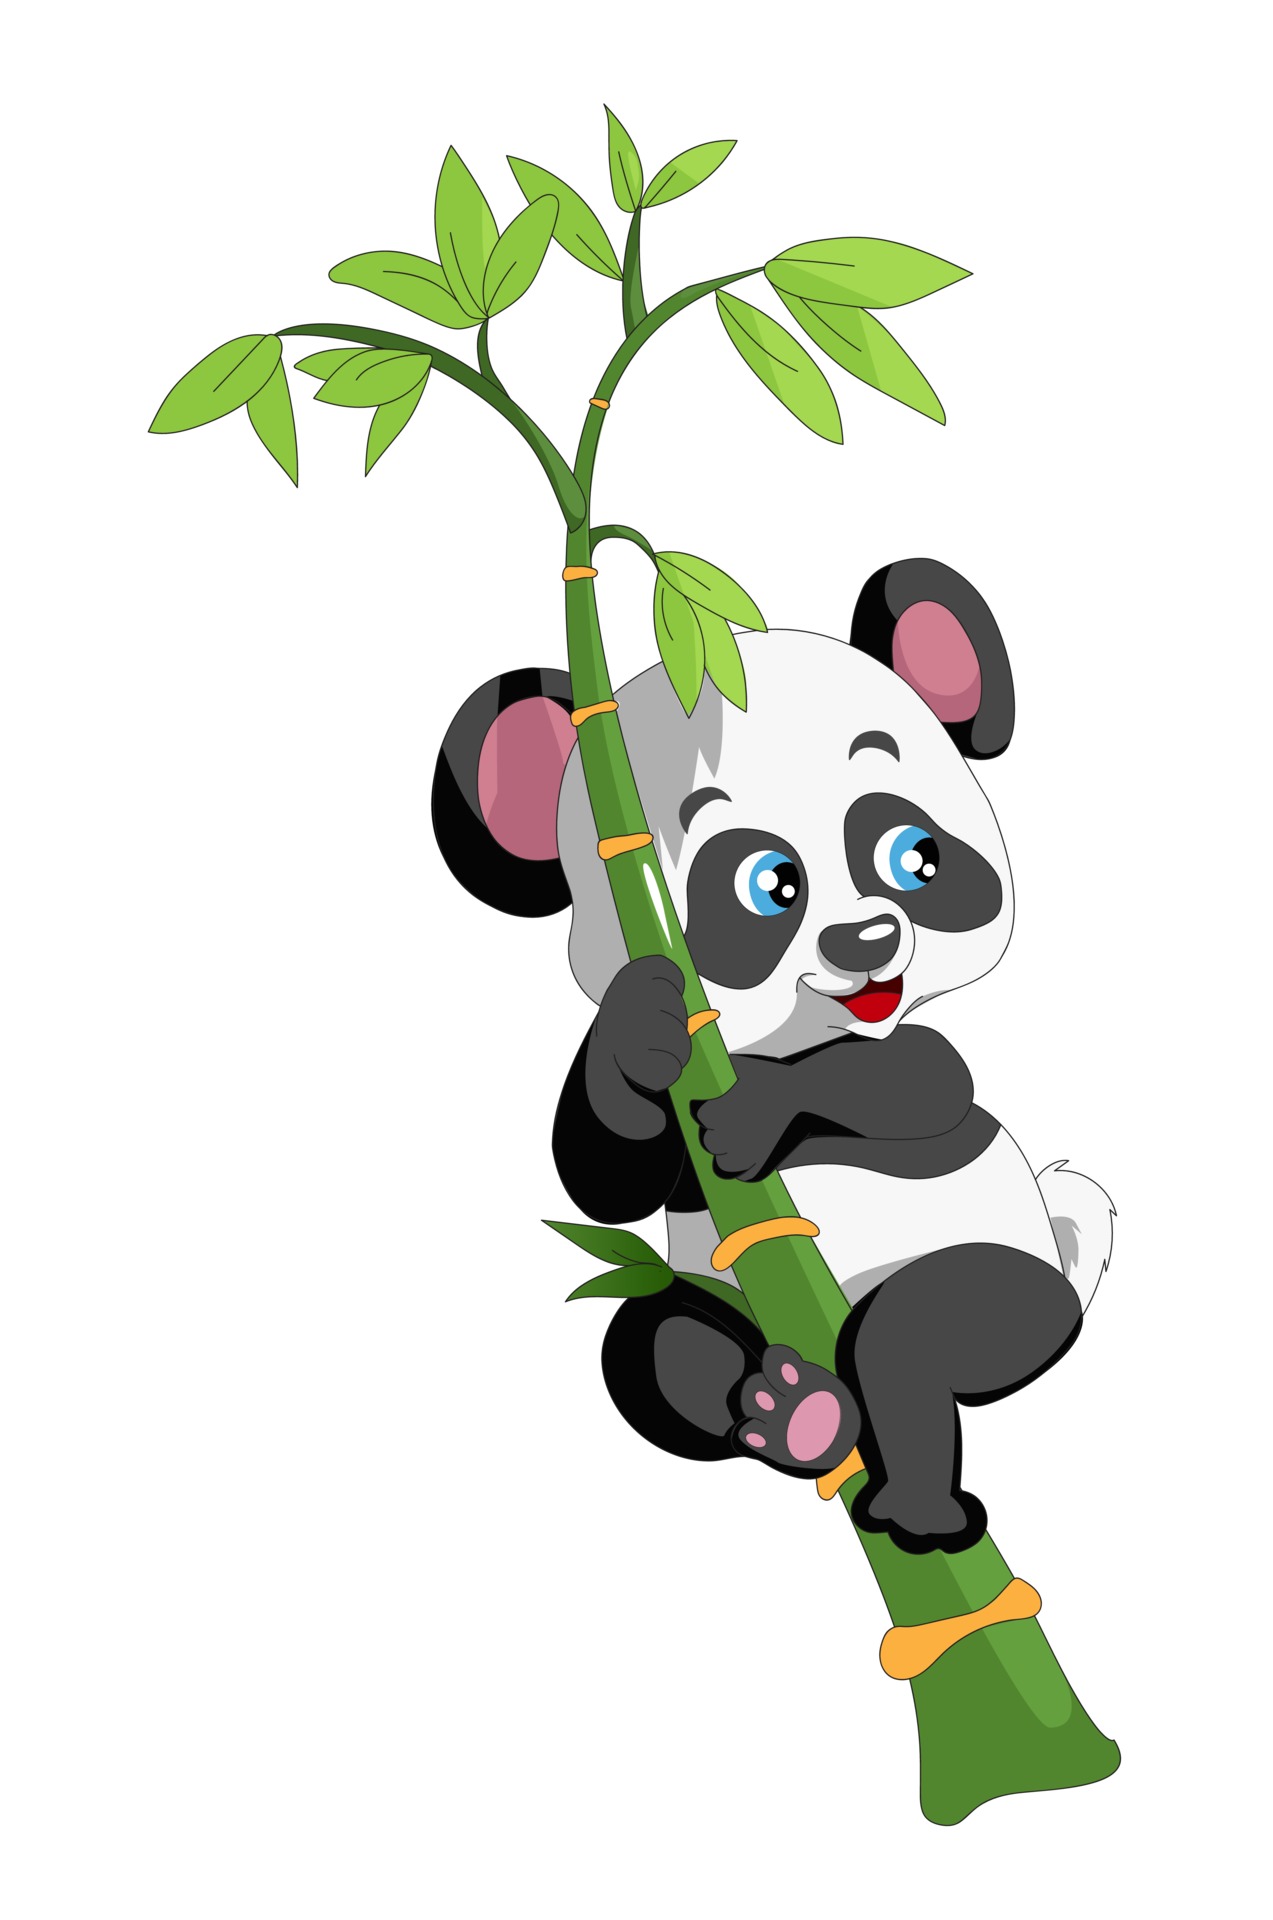 Laughing panda climbs a bamboo cartoon 2162490 Vector Art at Vecteezy